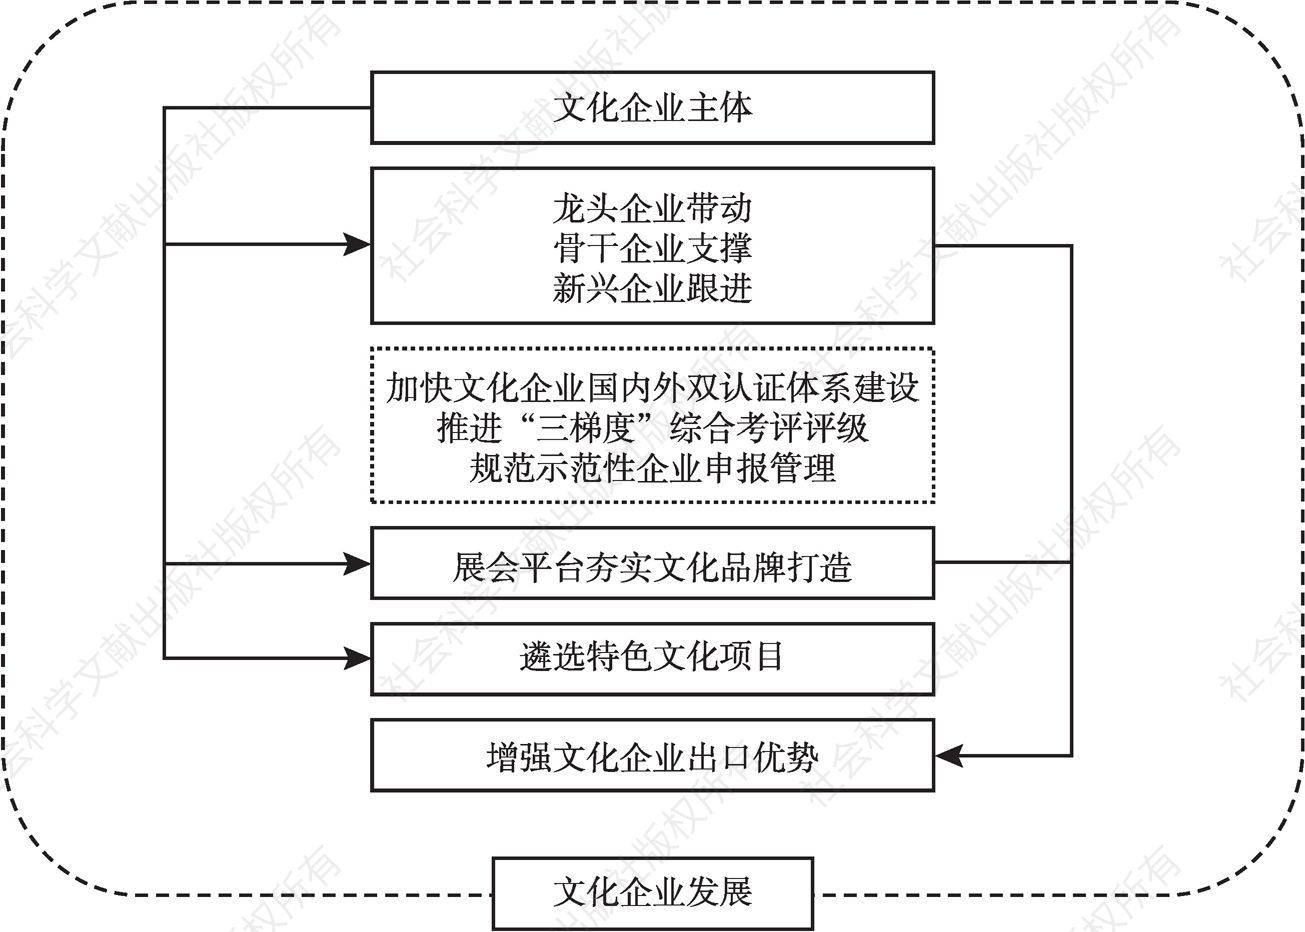 图3 四川省文化企业发展战略框架